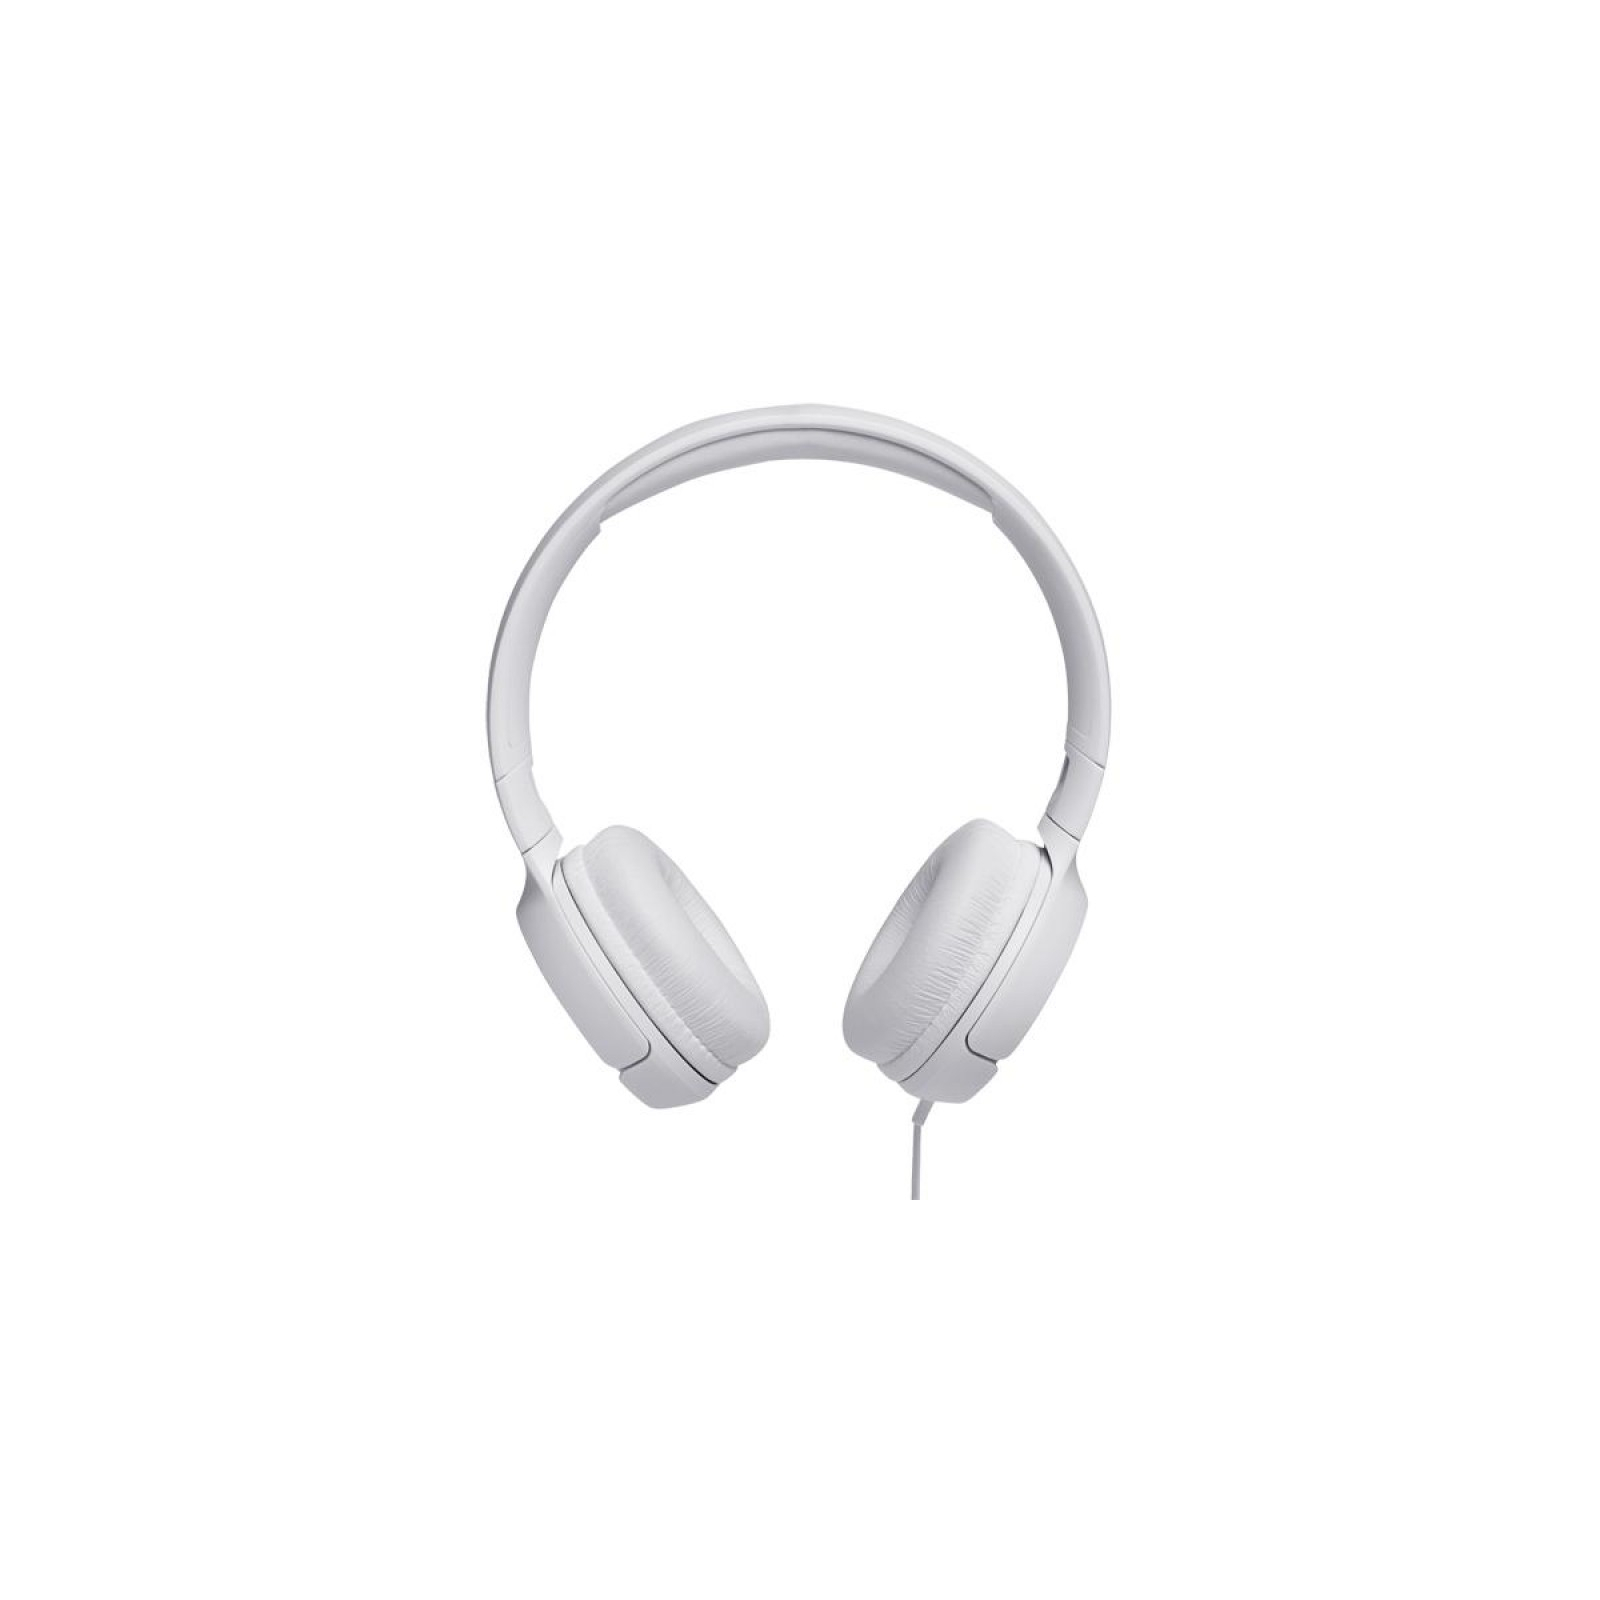 Навушники JBL T500 White (JBLT500WHT) зображення 2